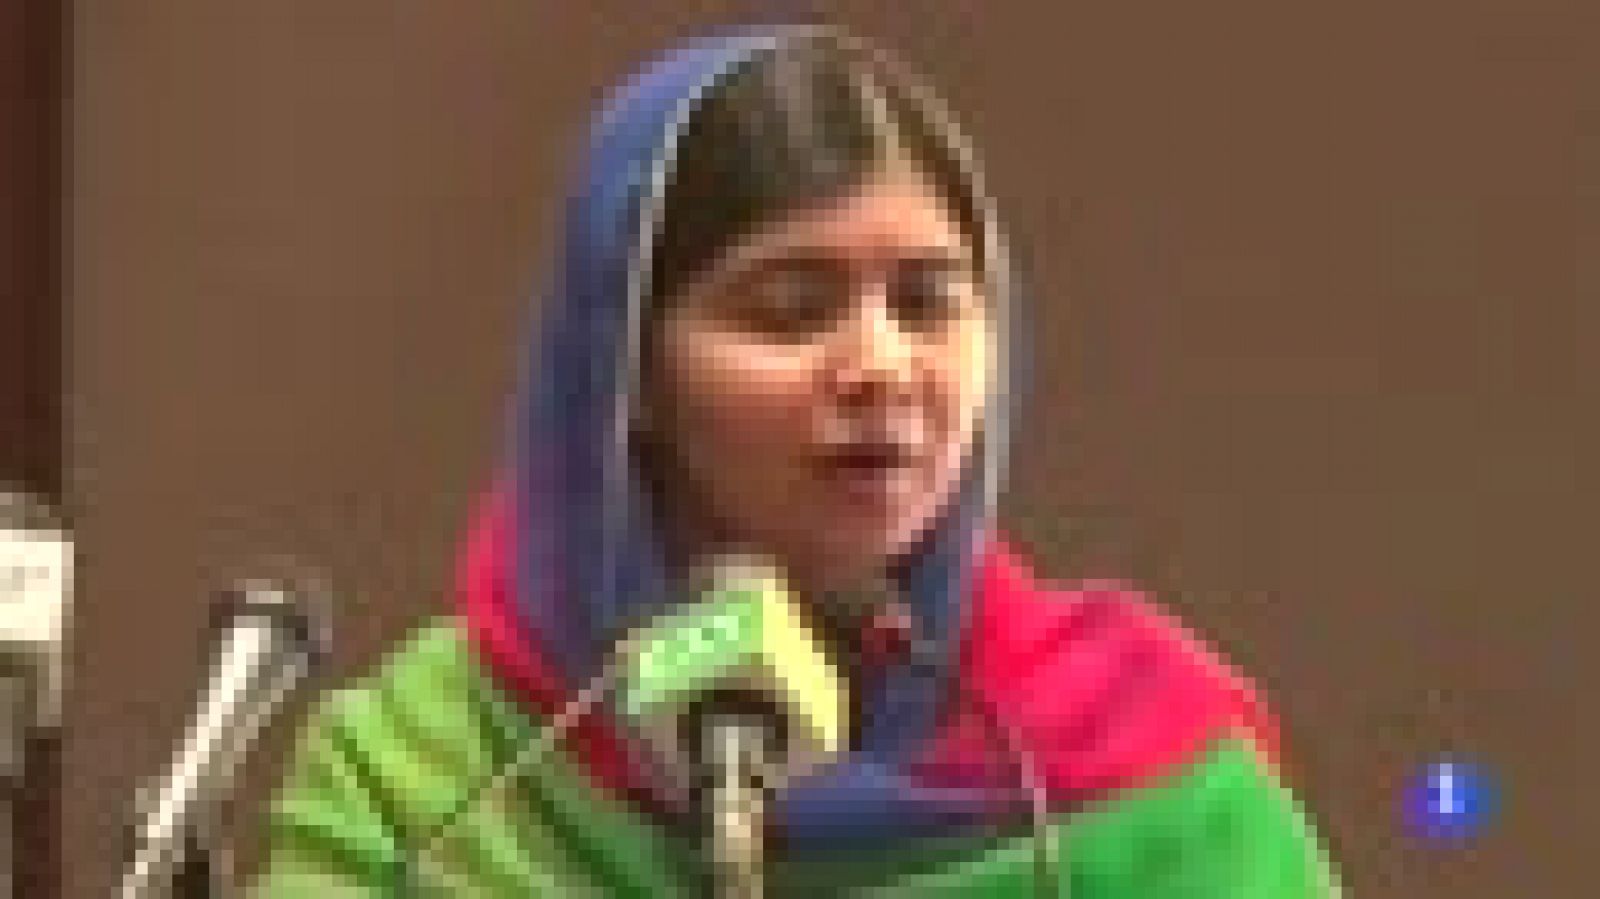 Malala, en Pakistán: "Estoy muy feliz de volver, he soñado con este momento durante años"